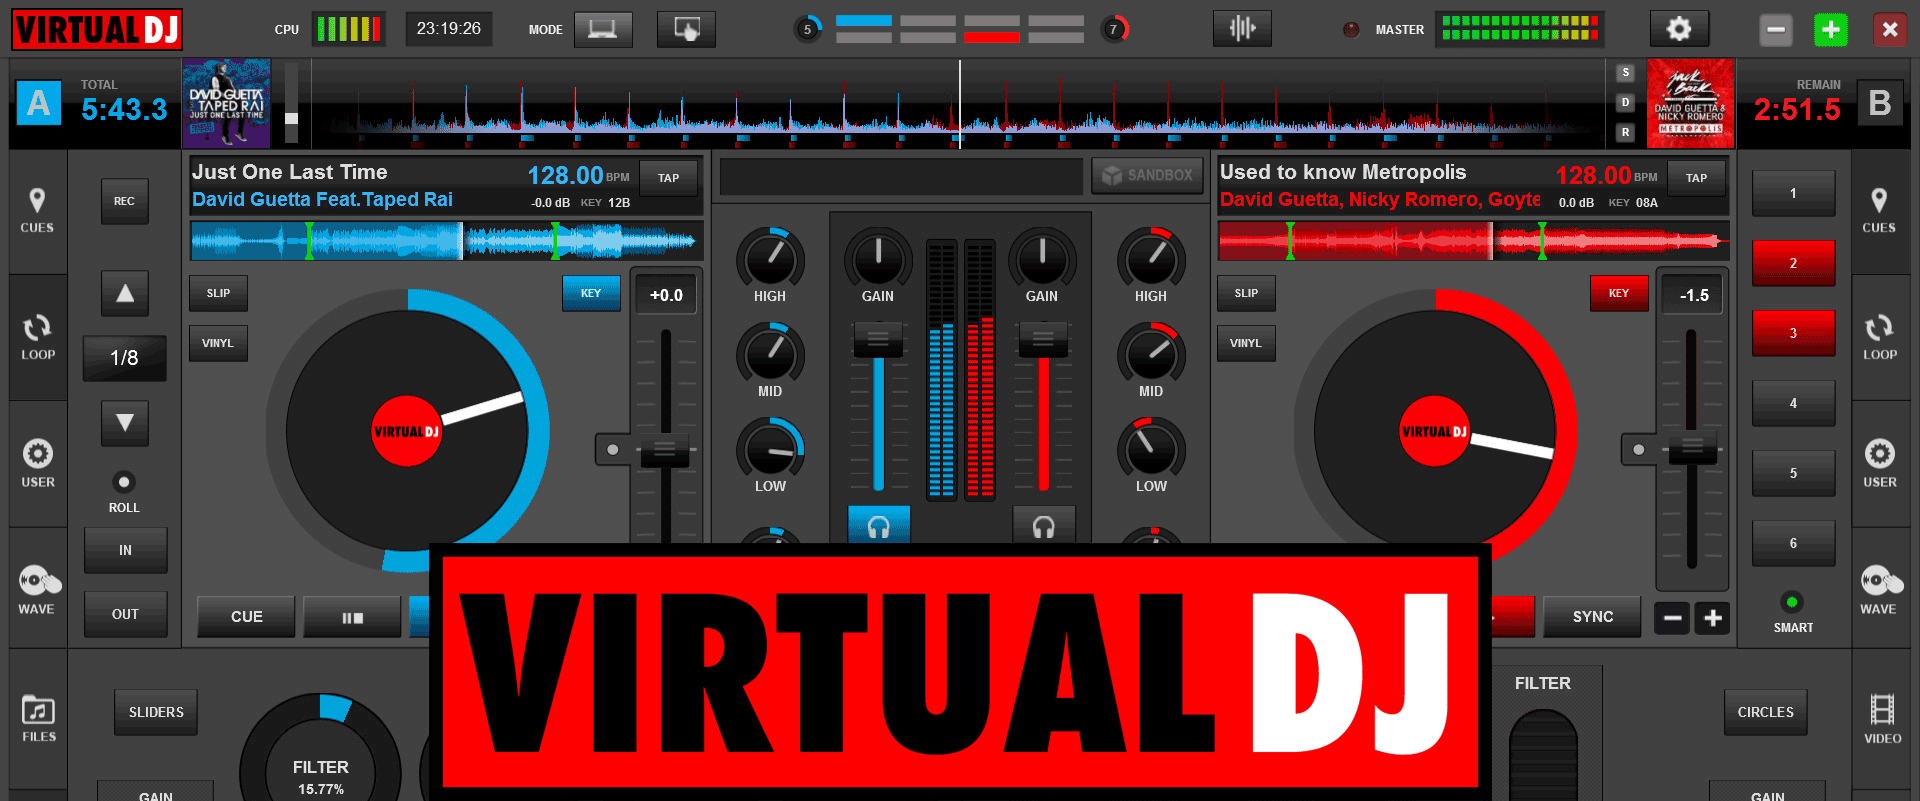 virtual dj 2021 crack download for mac